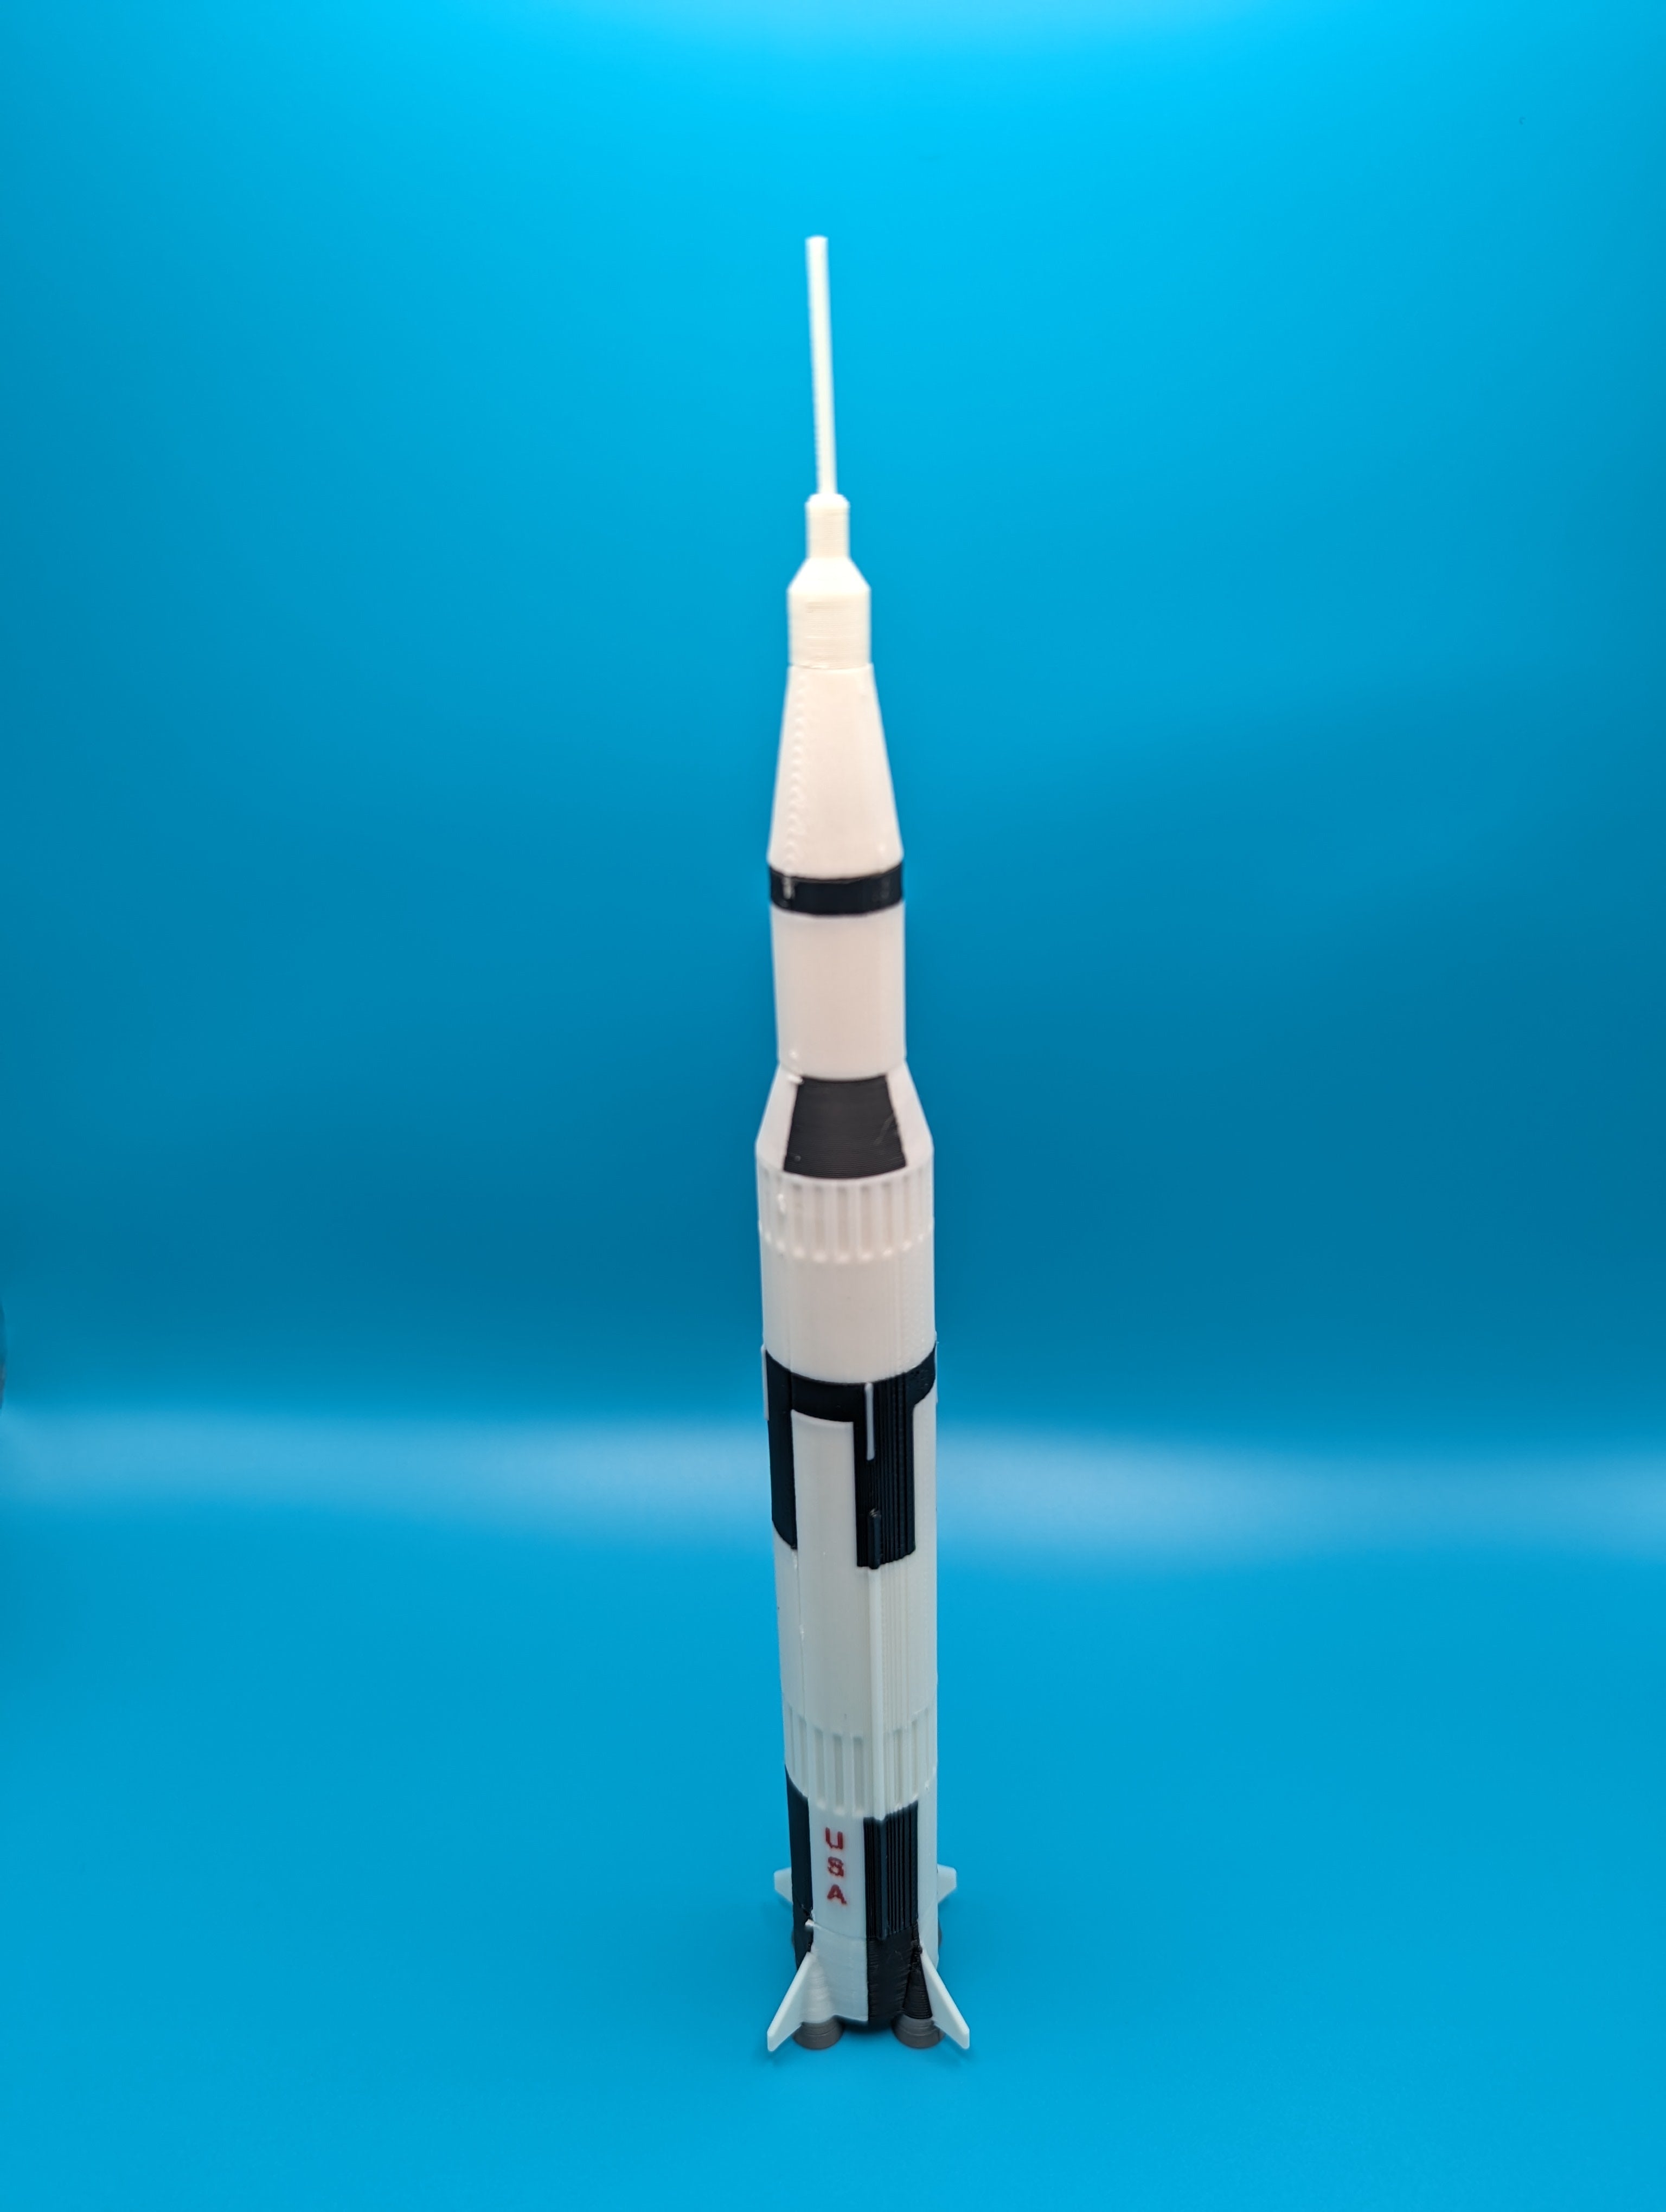 Kit en miniatura del cohete Saturno V de la NASA